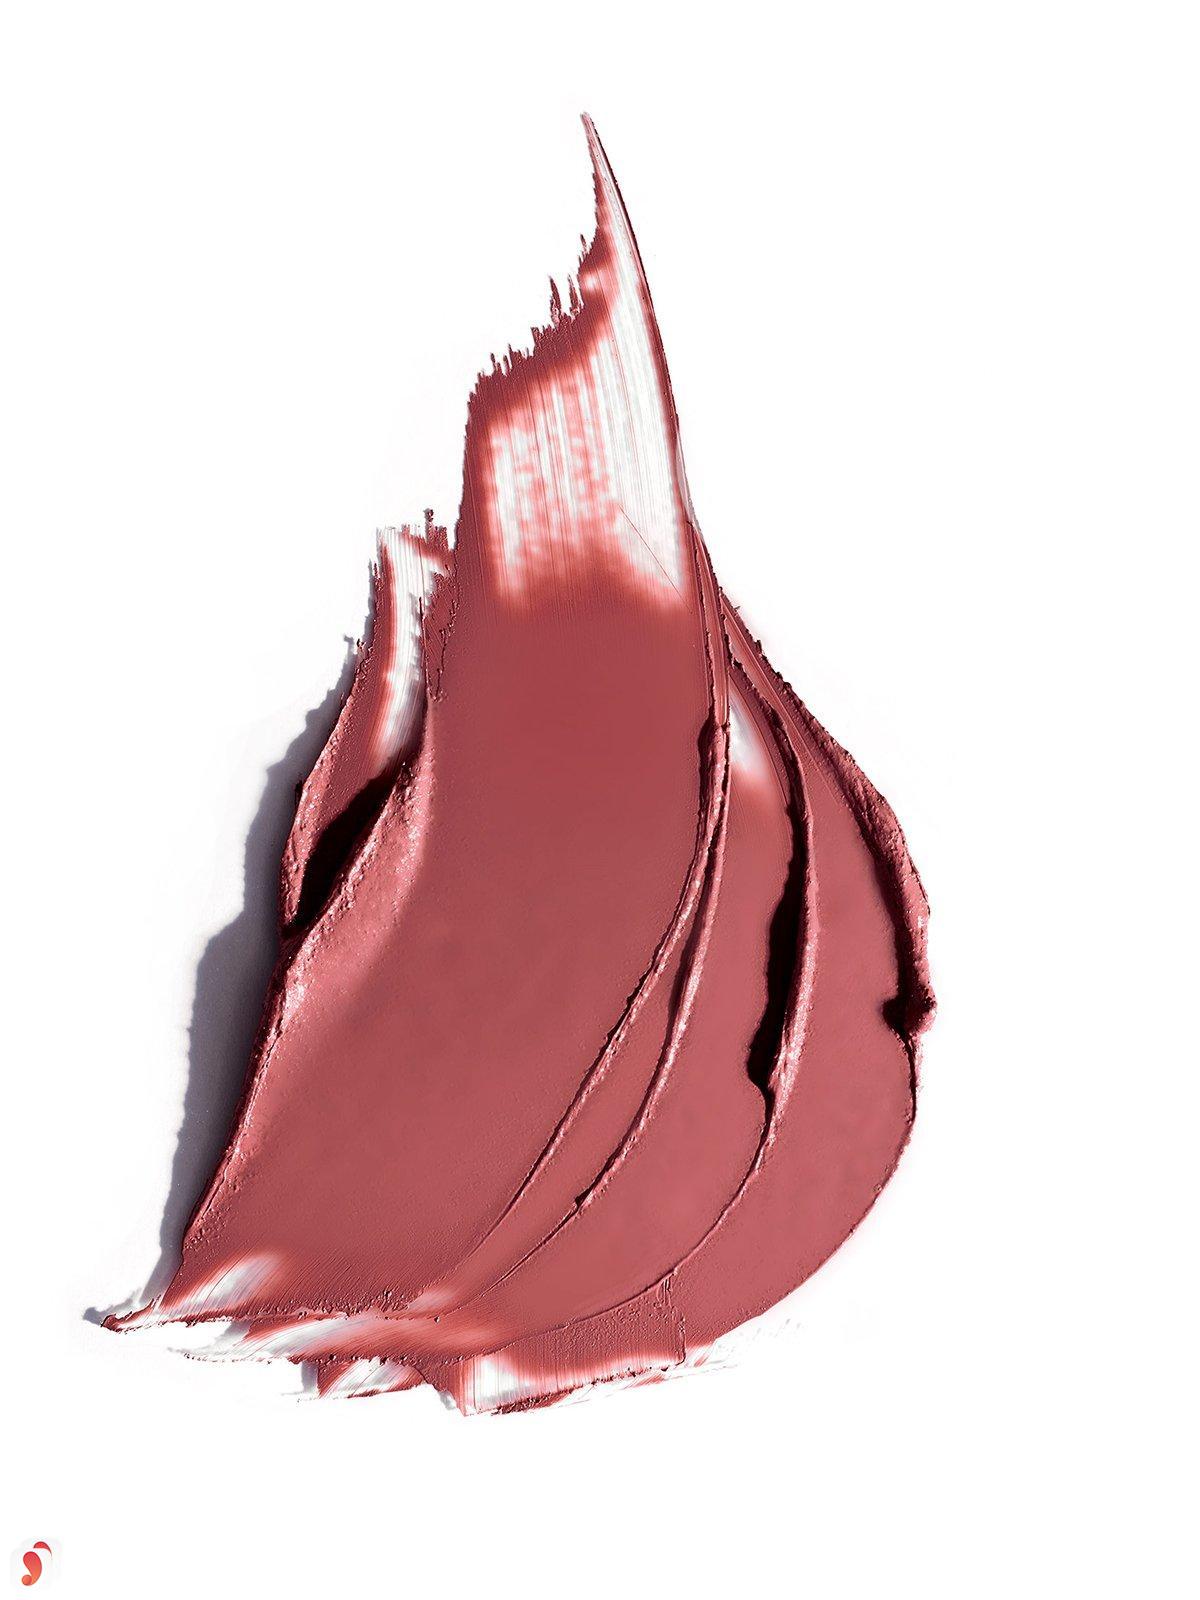 Review son Ilia Color Block High Impact Lipstick 10